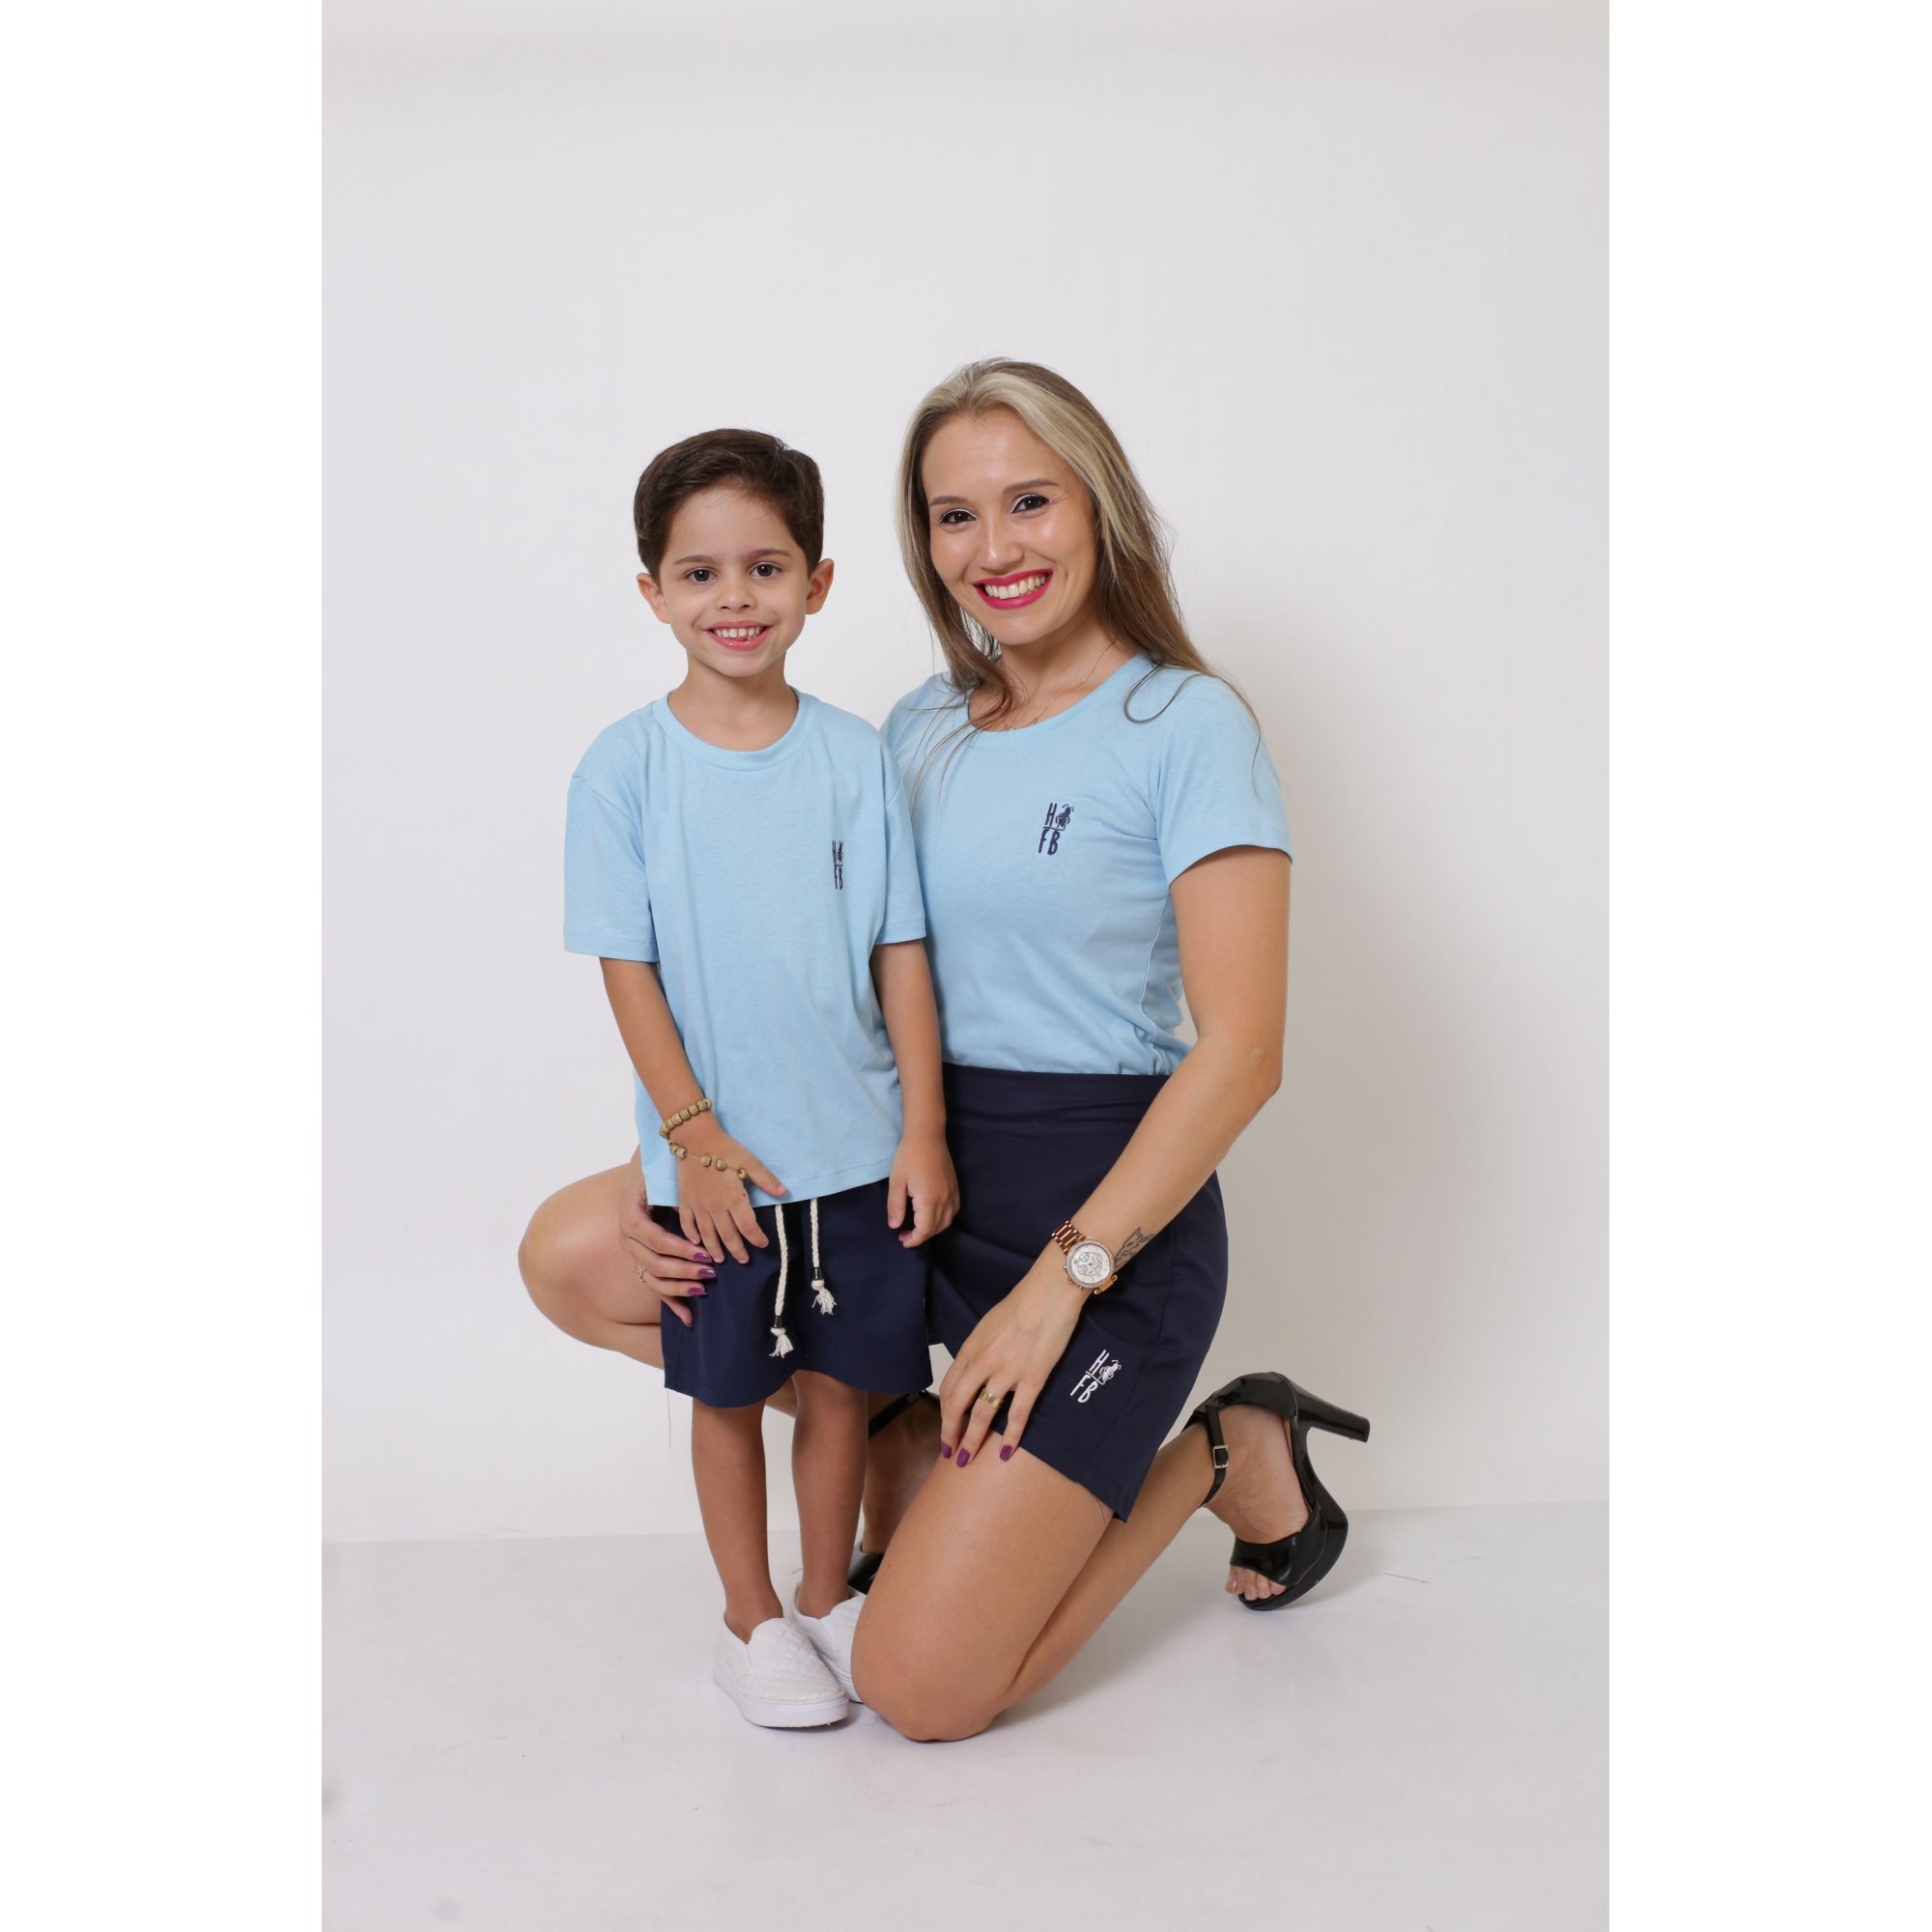 MÃE E FILHO > Kit 02 Peças - T-Shirts ou Body Azul Bebê [Coleção Tal Mãe Tal Filho]